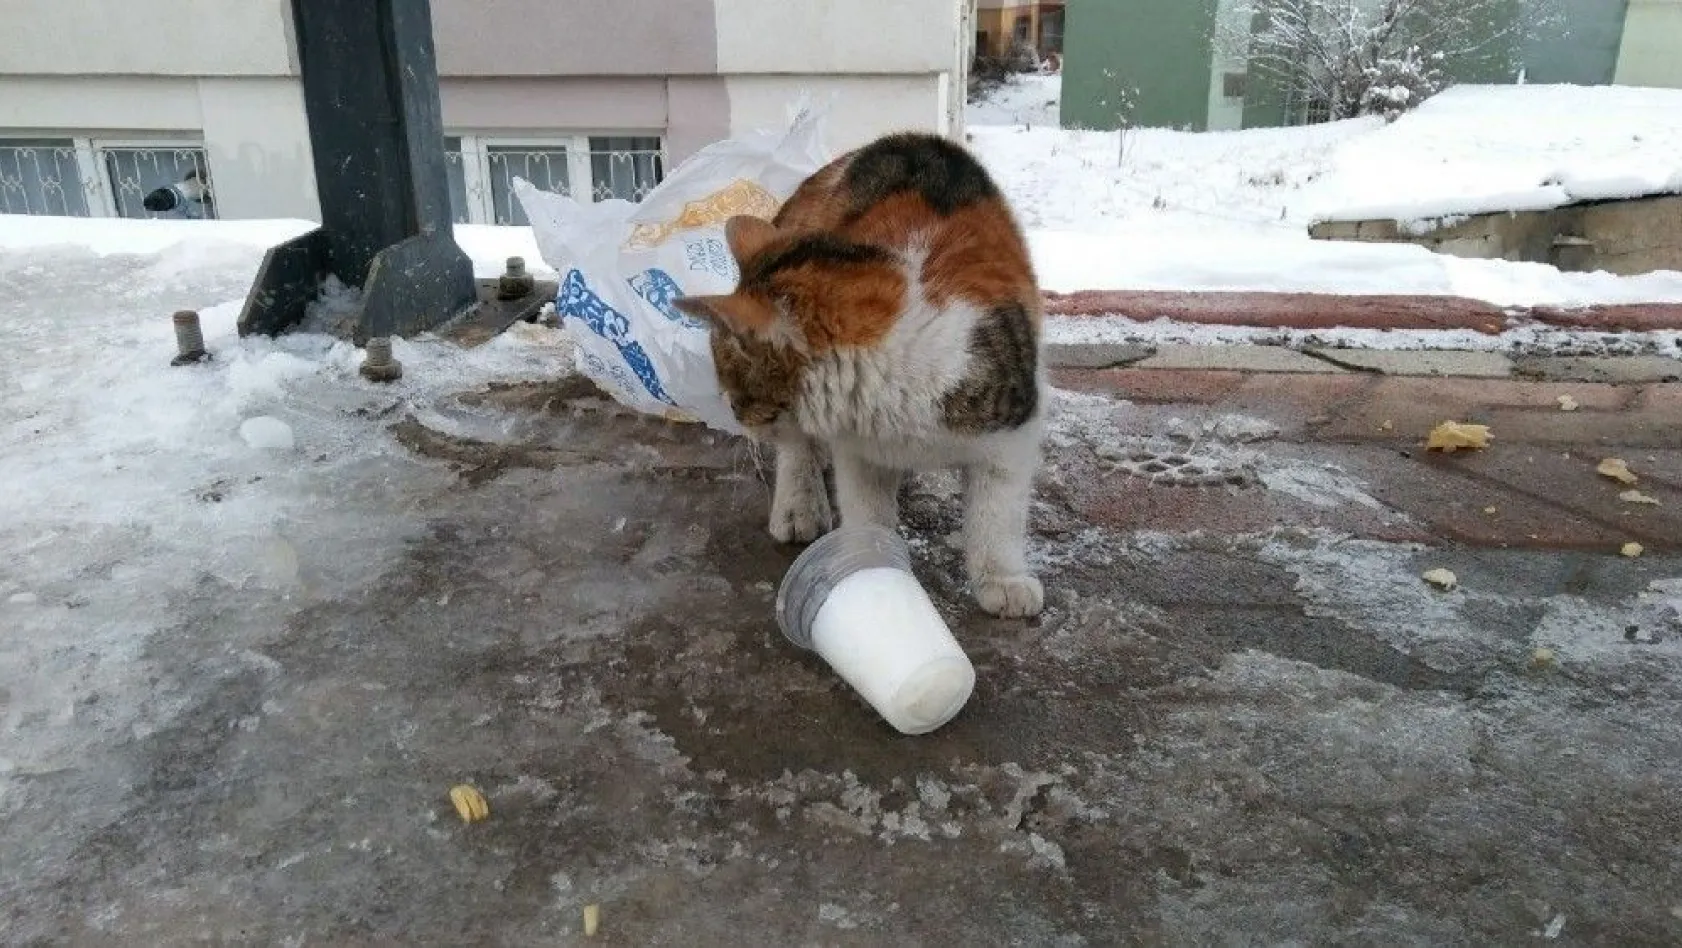 Aç kalan kedi donmuş sütle karnını doyurmaya çalıştı
